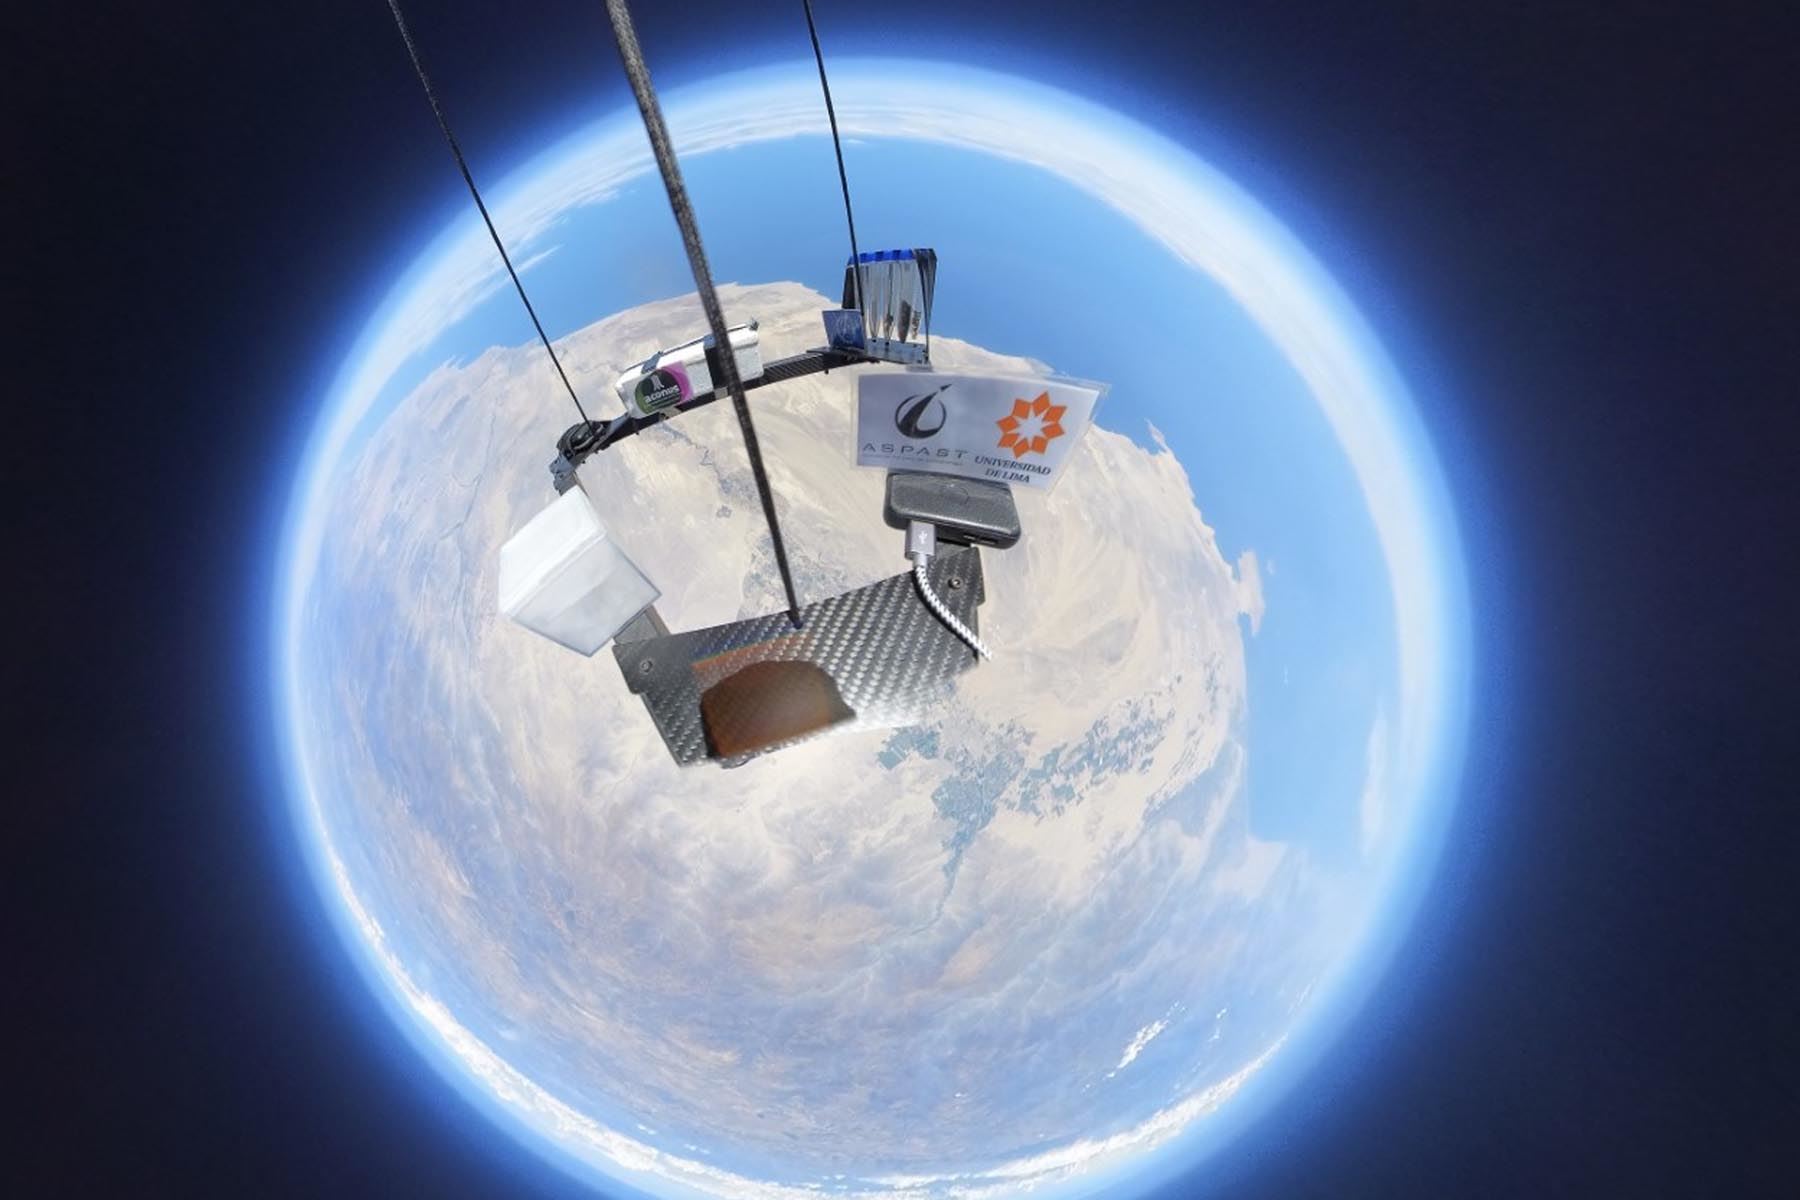 El globo estratosférico, equipado con una cámara de 360 grados, tuvo un peso de 1,500 gramos y logró superar el récord previo. Foto: Proyecto Estratósfera